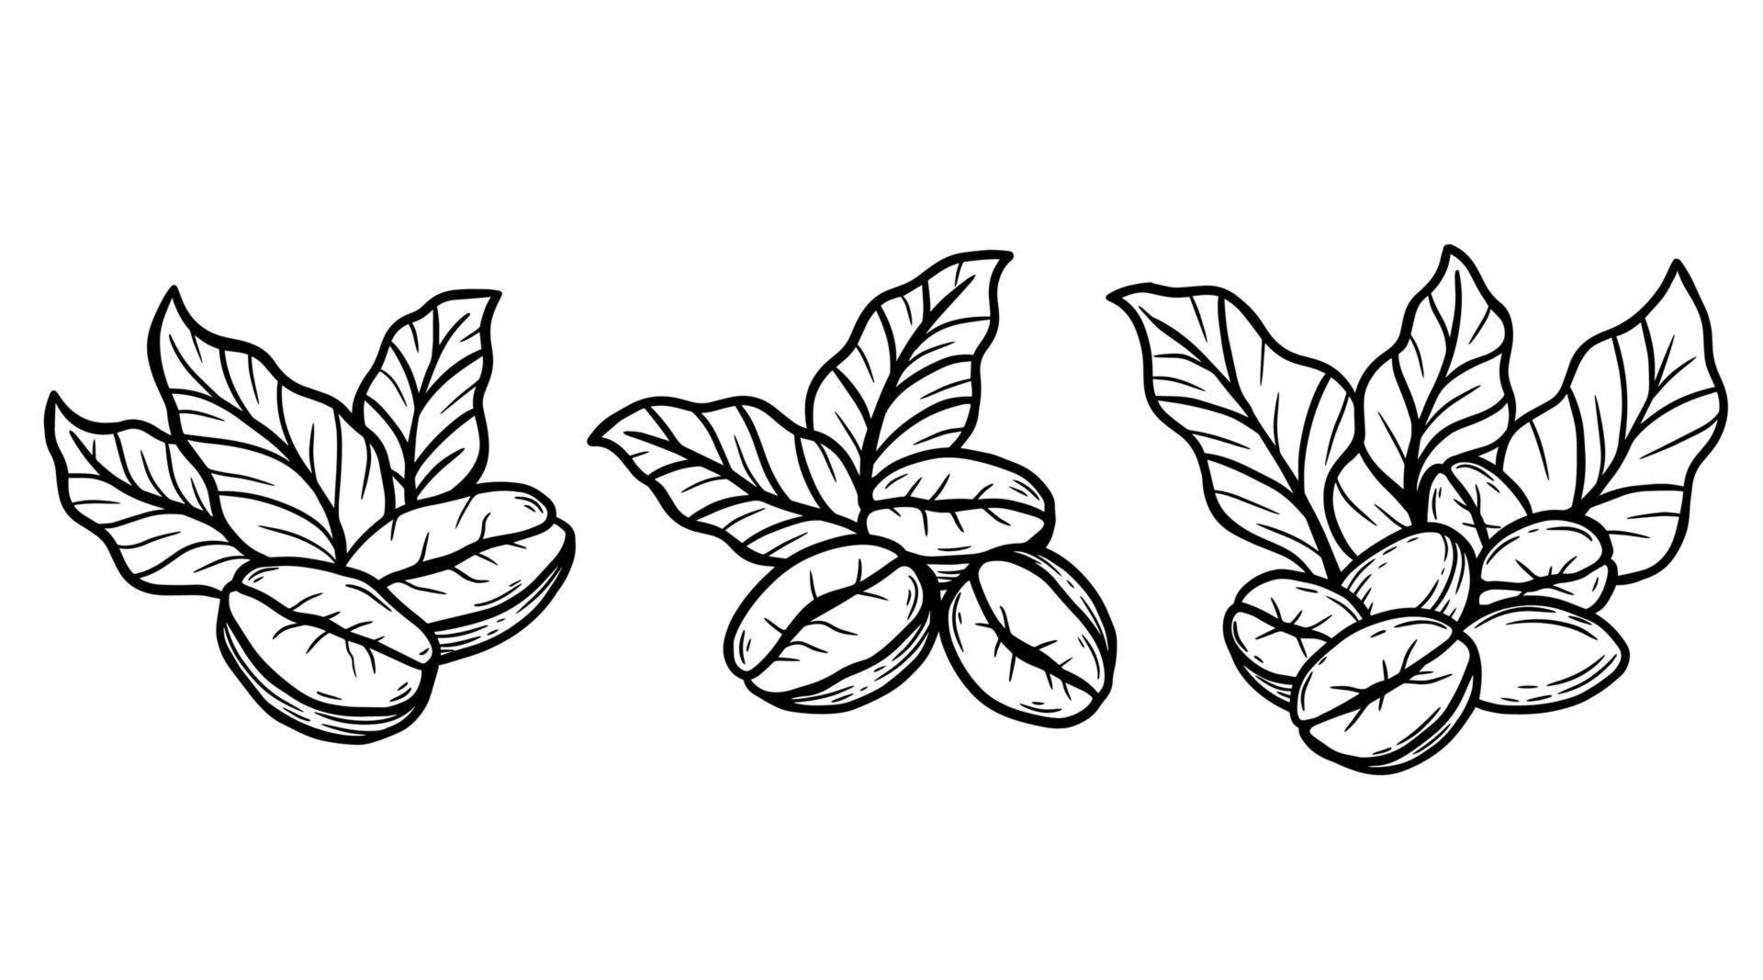 rama de café con frijoles y hojas dibujadas a mano para ilustración de restaurantes de cafetería vector